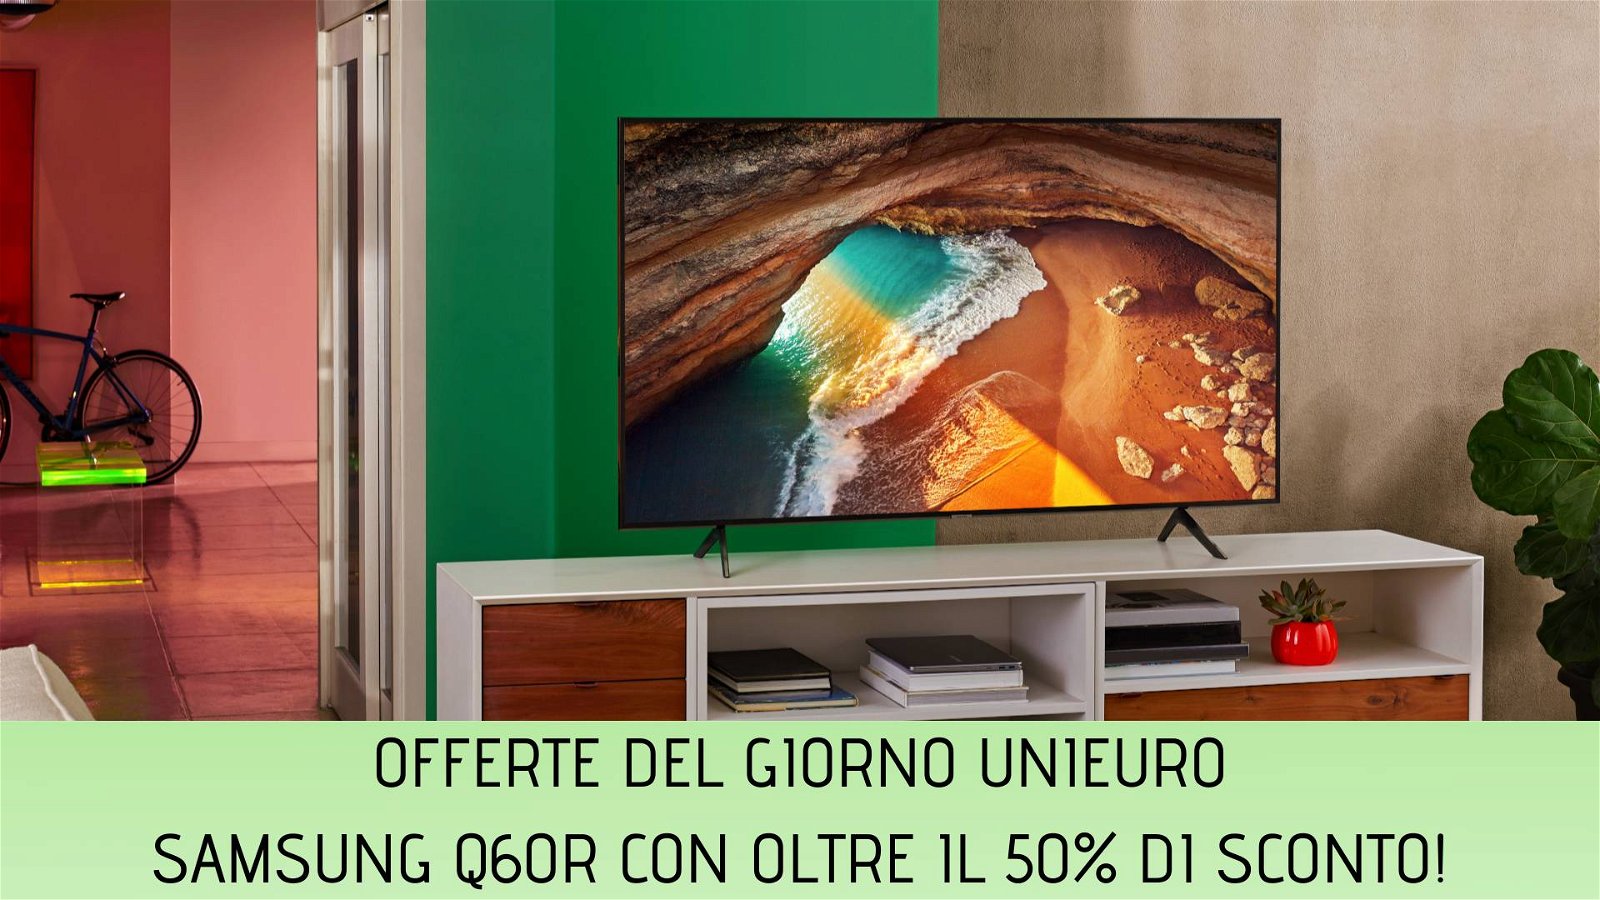 Immagine di Offerte del giorno Unieuro: smart TV Samsung Q60R con oltre il 50% di sconto!